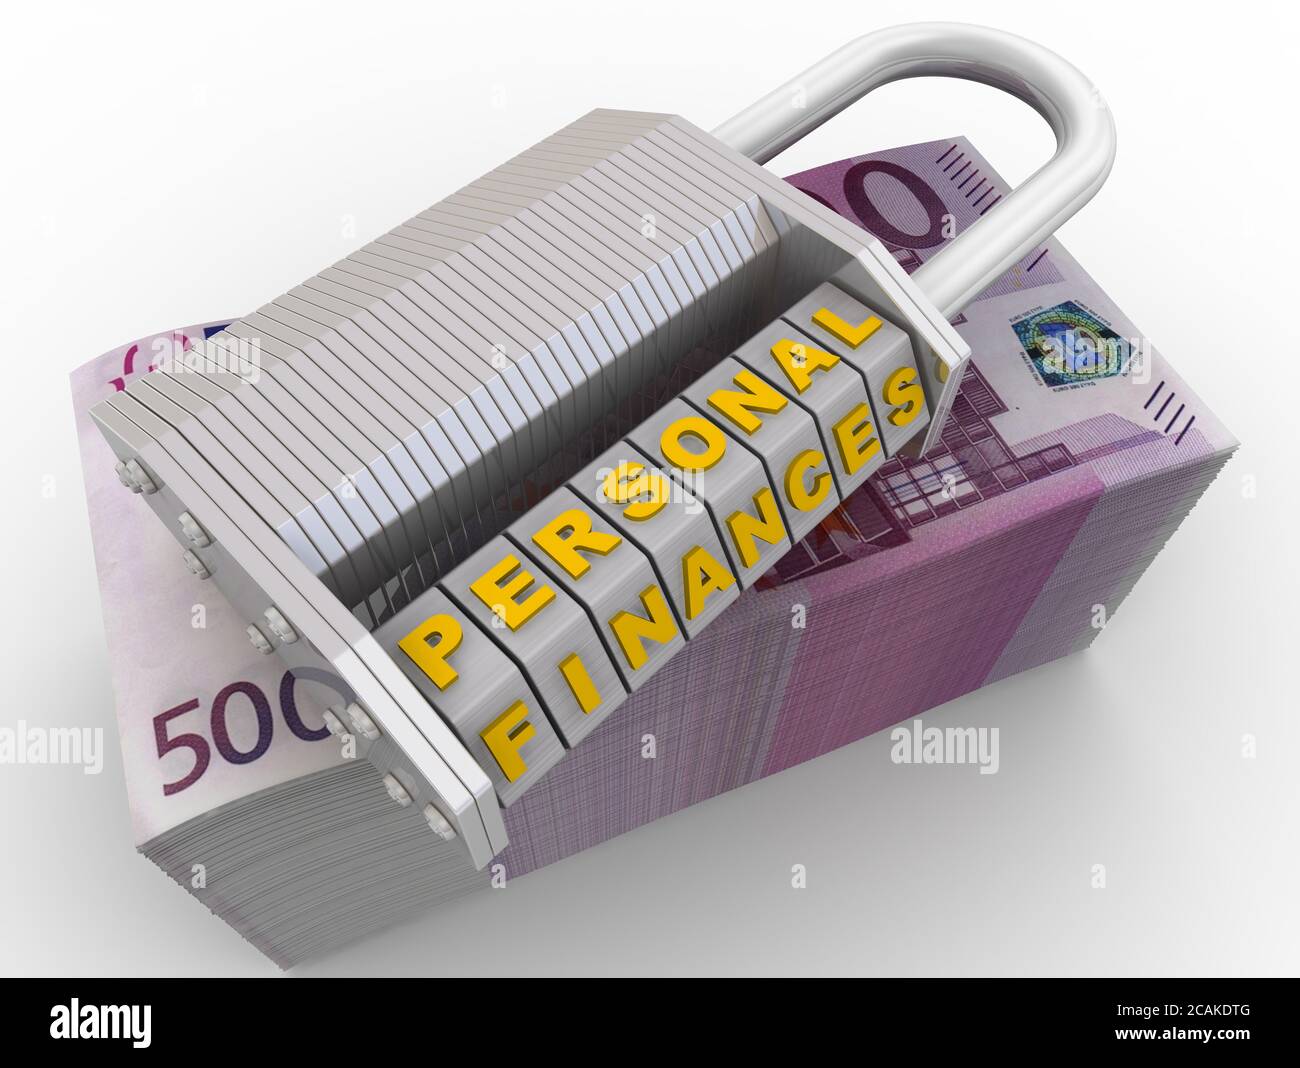 Persönliche Finanzen sind geschützt. Kombinationsschloss (wordlock) mit Buchstaben PERSÖNLICHE FINANZEN auf einer Packung Euro-Banknoten. 3D-Illustration Stockfoto